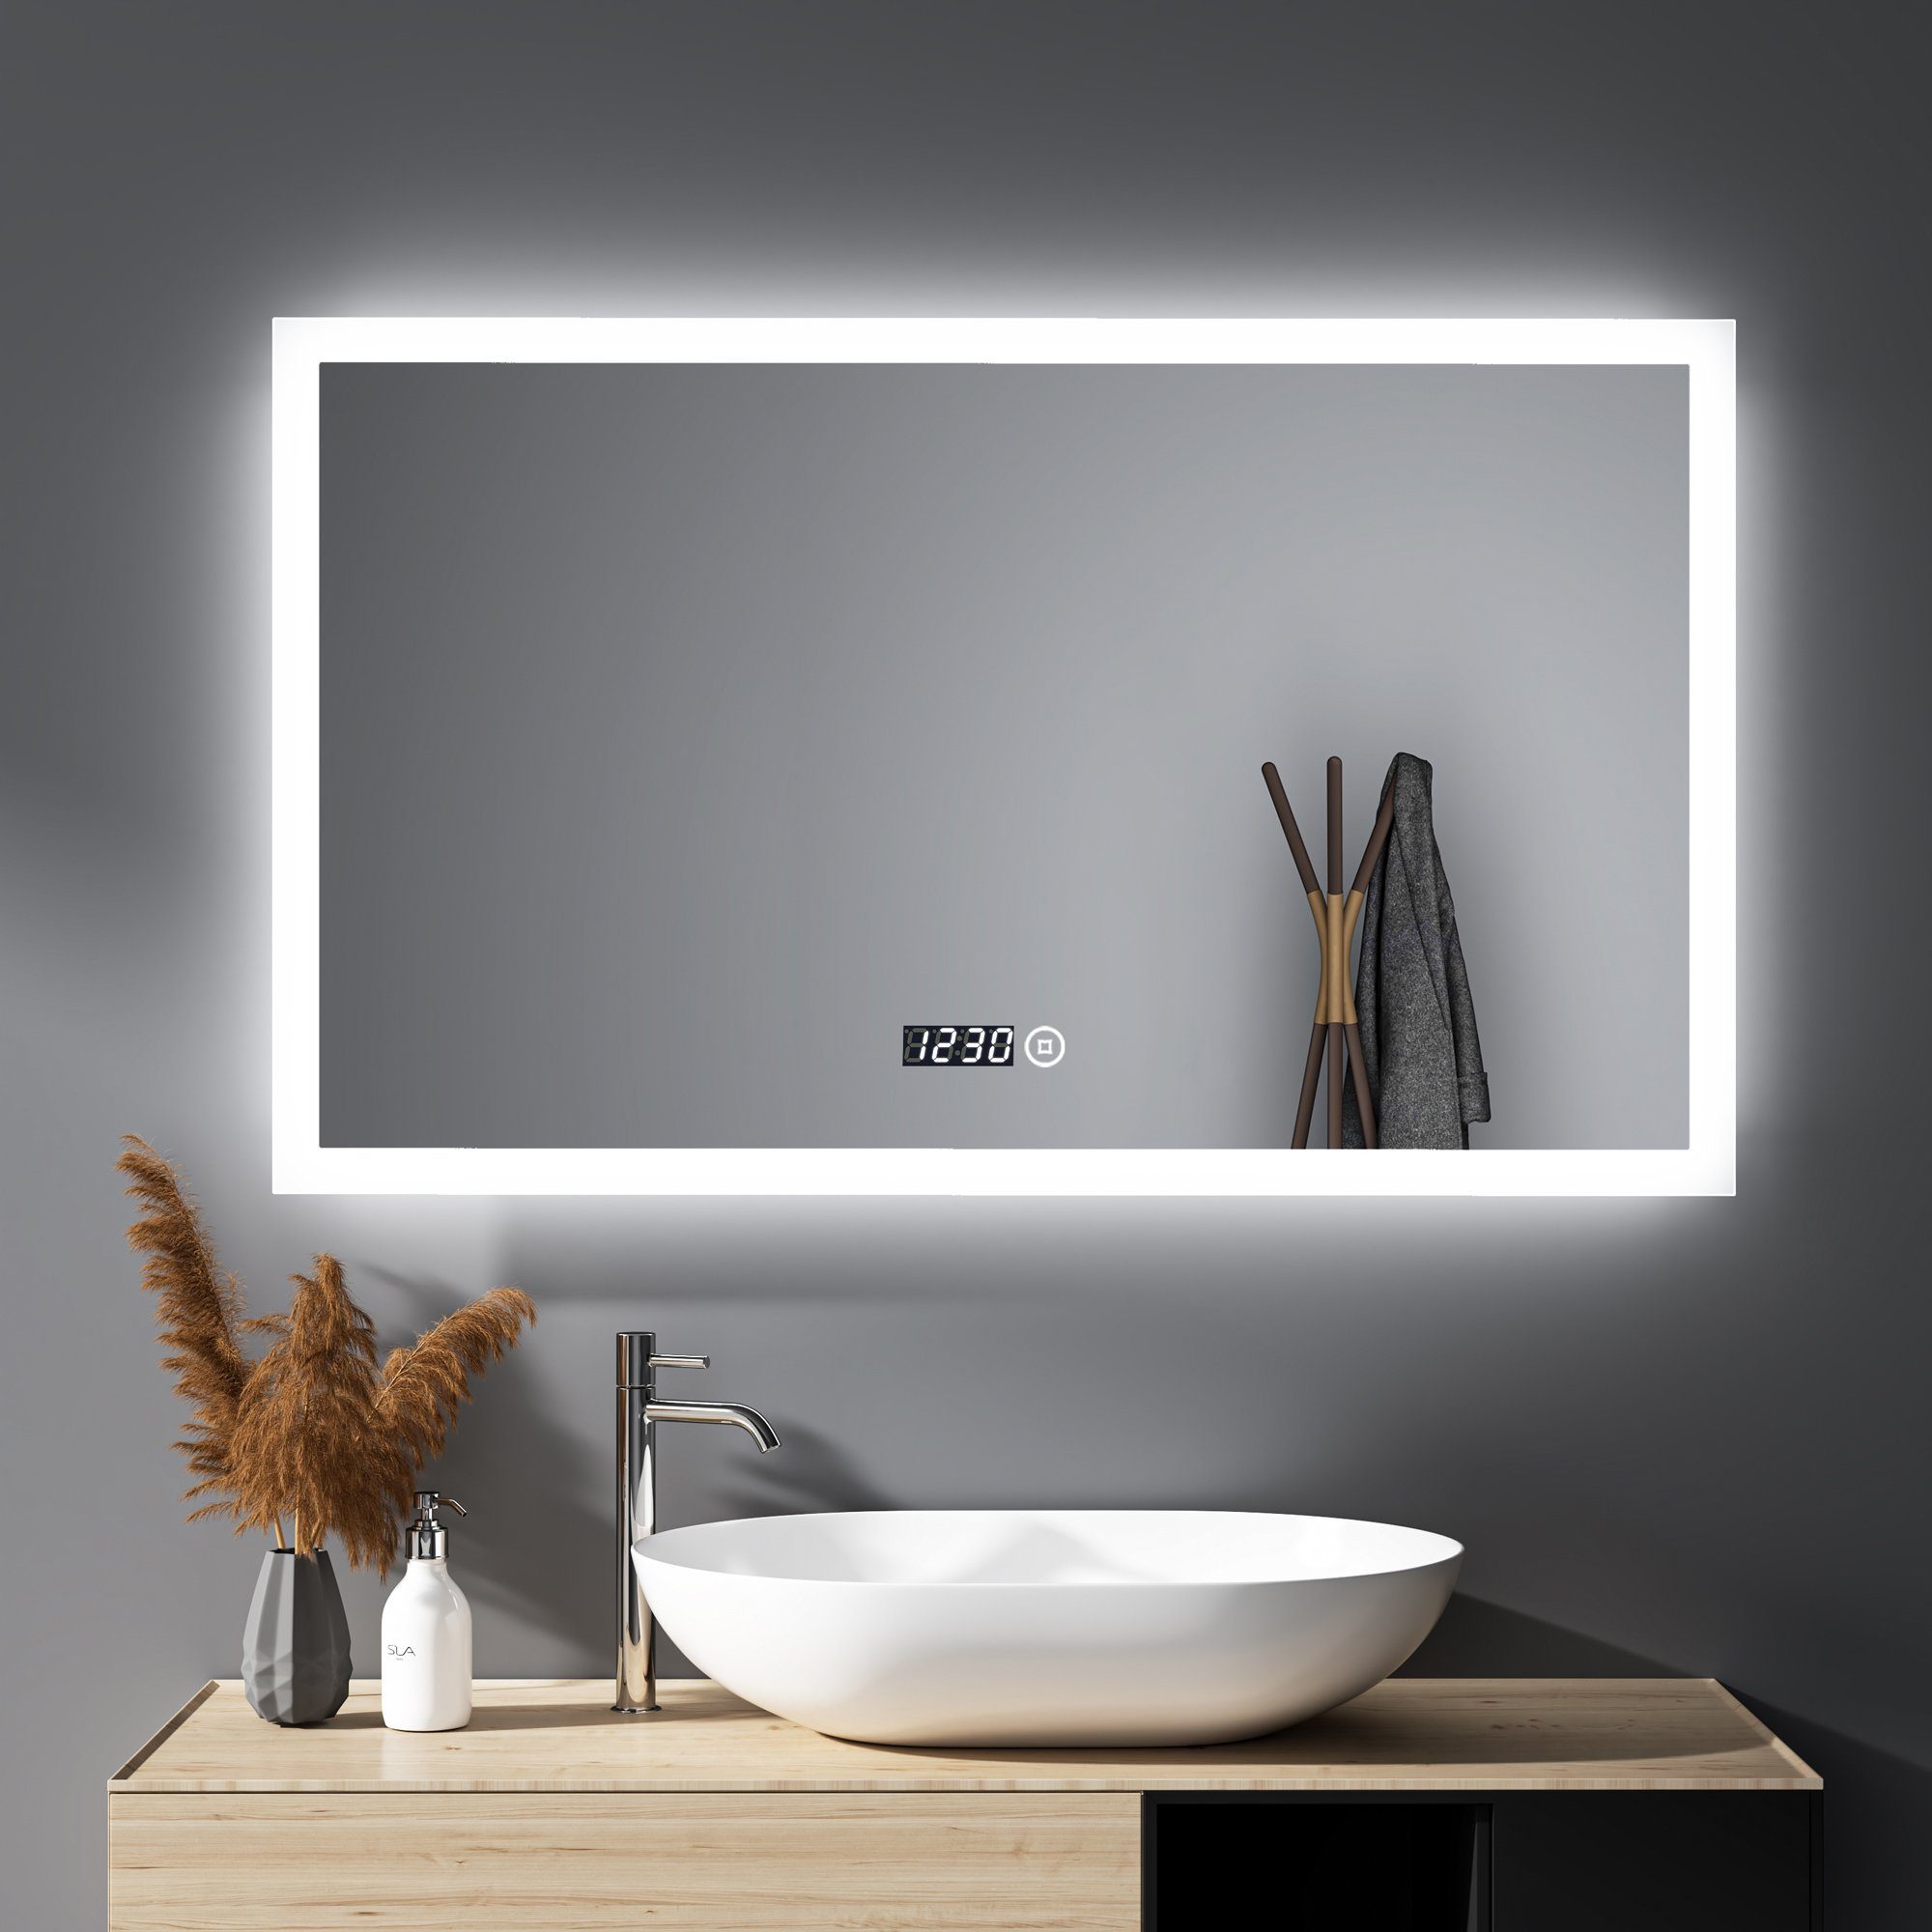 WDWRITTI Spiegel Led Badspiegel 100x60 mit Uhr Touch Dimmbar Kalt/Neutral/Warmweiß (Speicherfunktion, IP44), Wandschalter auswählbar